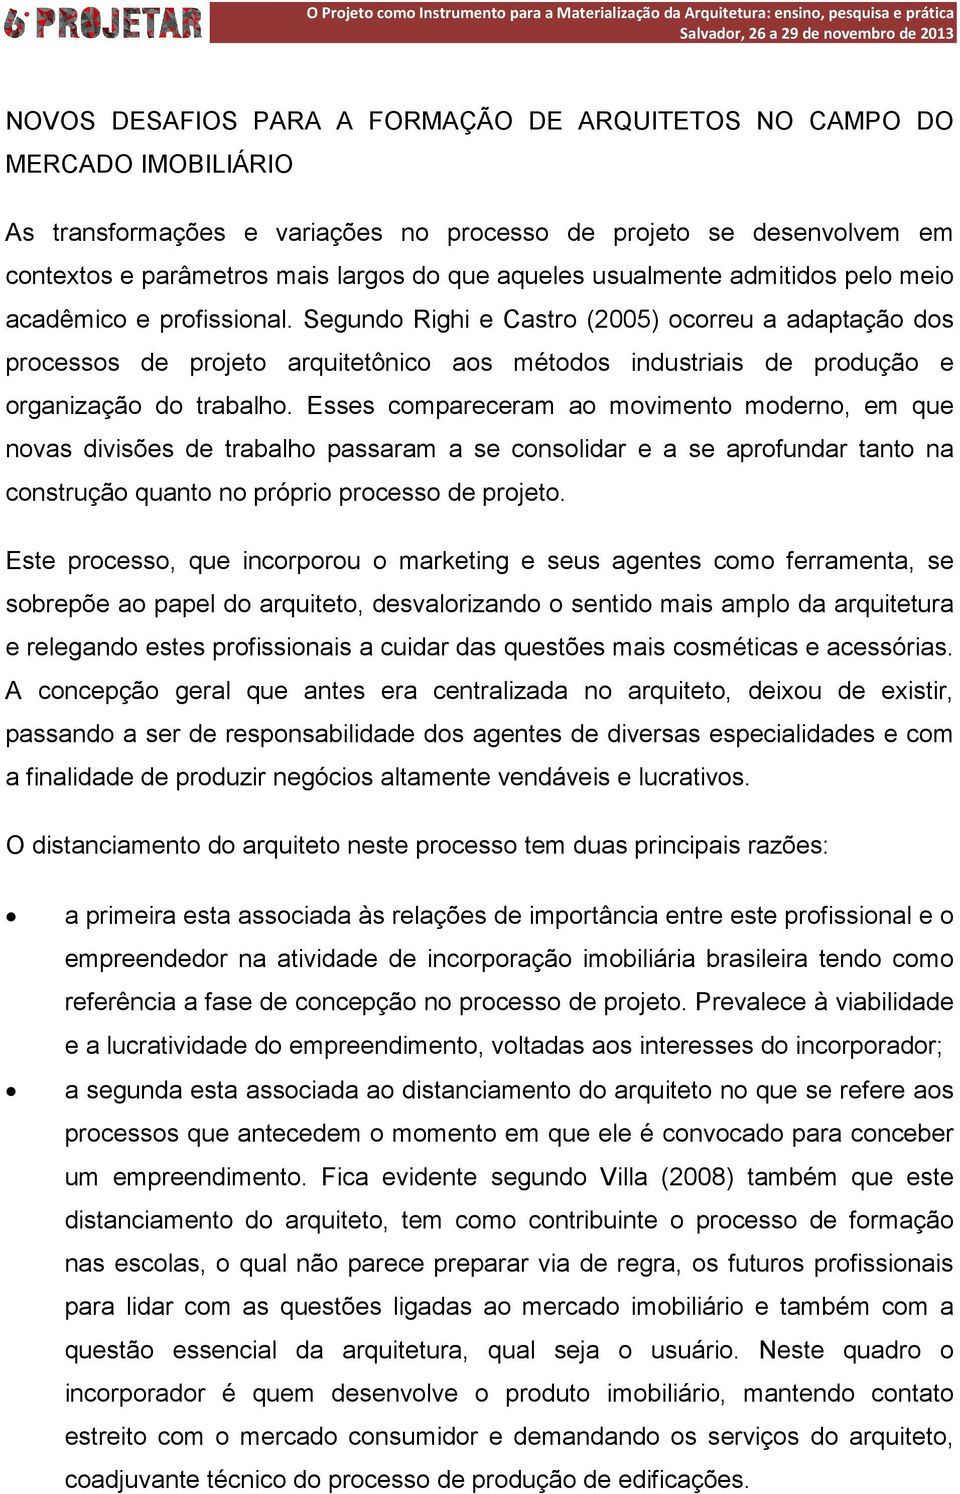 Segundo Righi e Castro (2005) ocorreu a adaptação dos processos de projeto arquitetônico aos métodos industriais de produção e organização do trabalho.